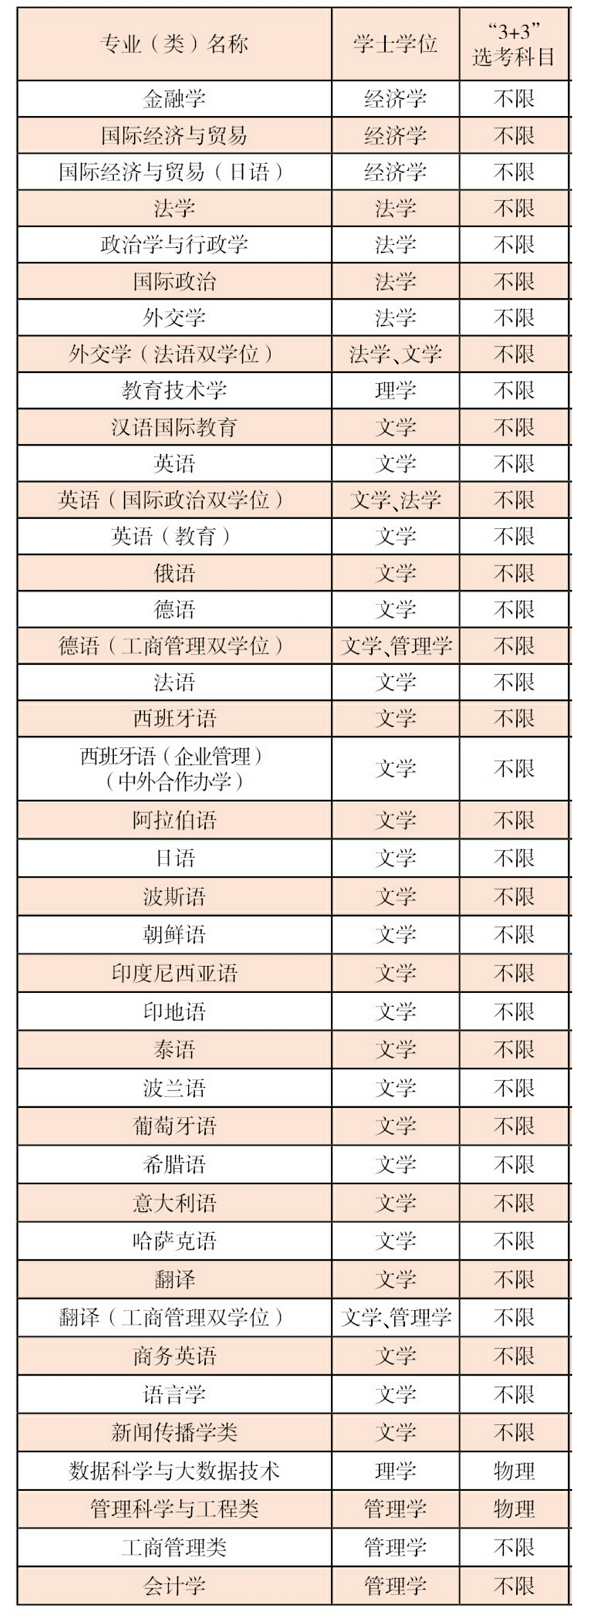 上海外国语大学2021选科要求对照表3+3模式